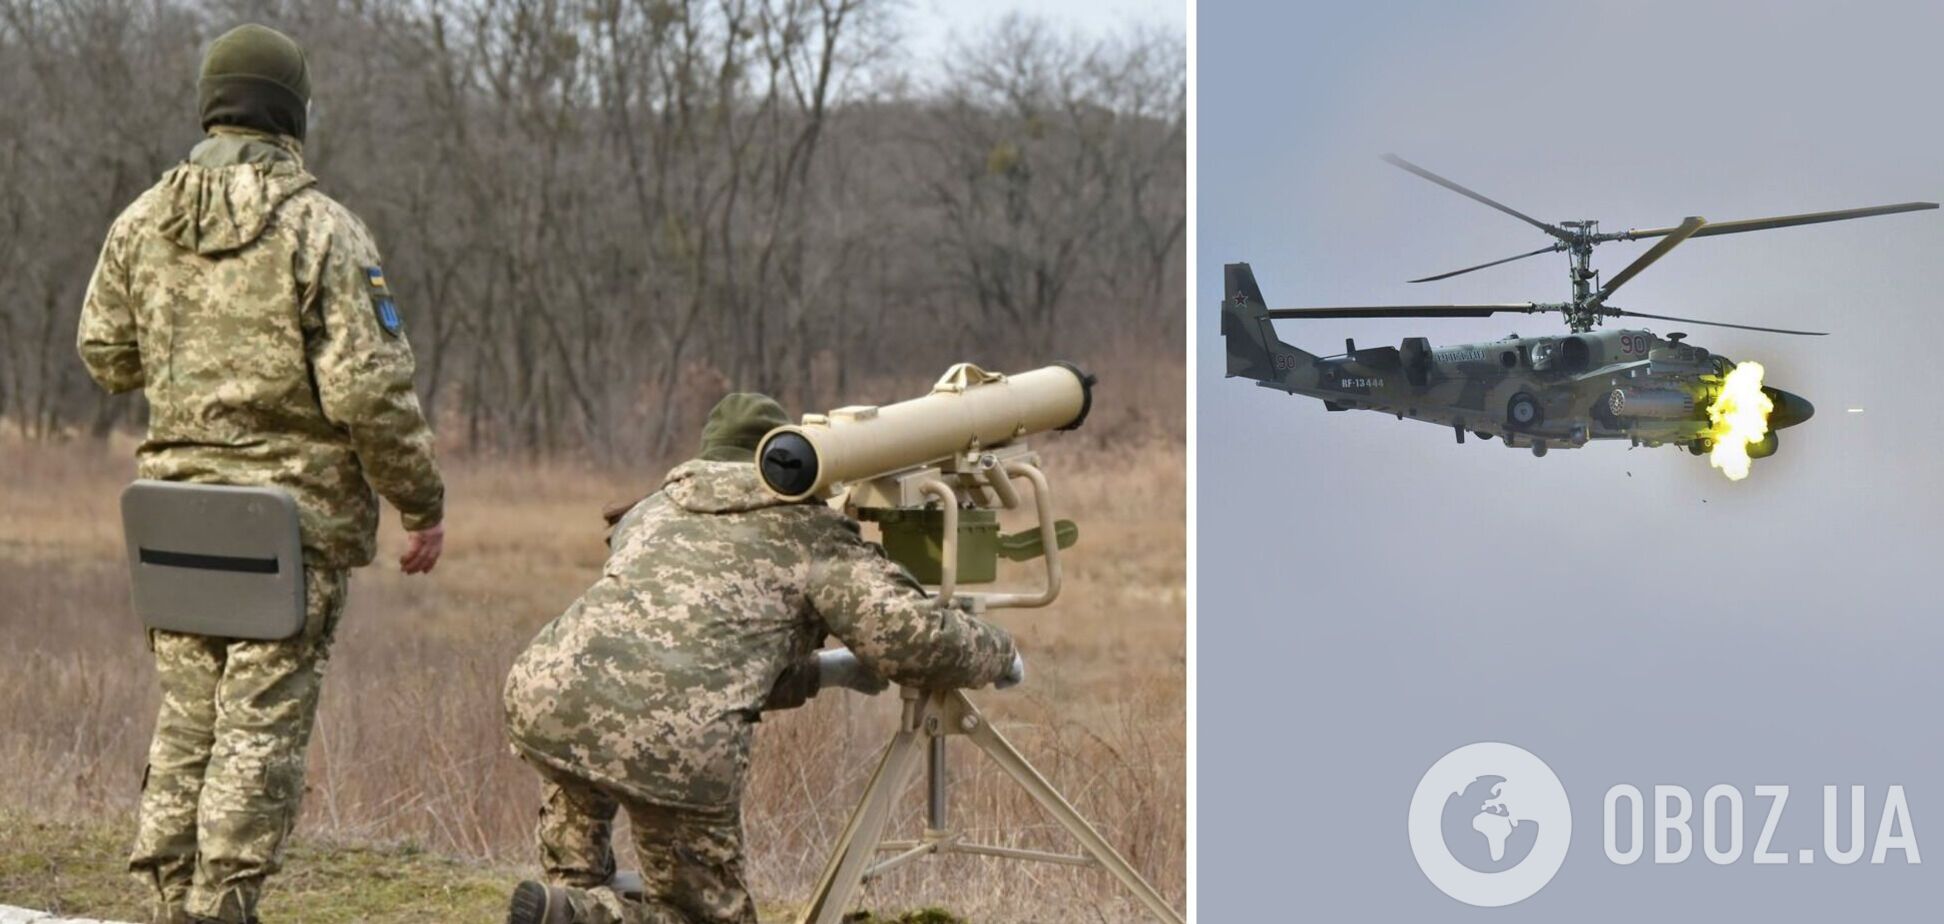 Защитники Украины уничтожают вражеские вертолеты и самолеты